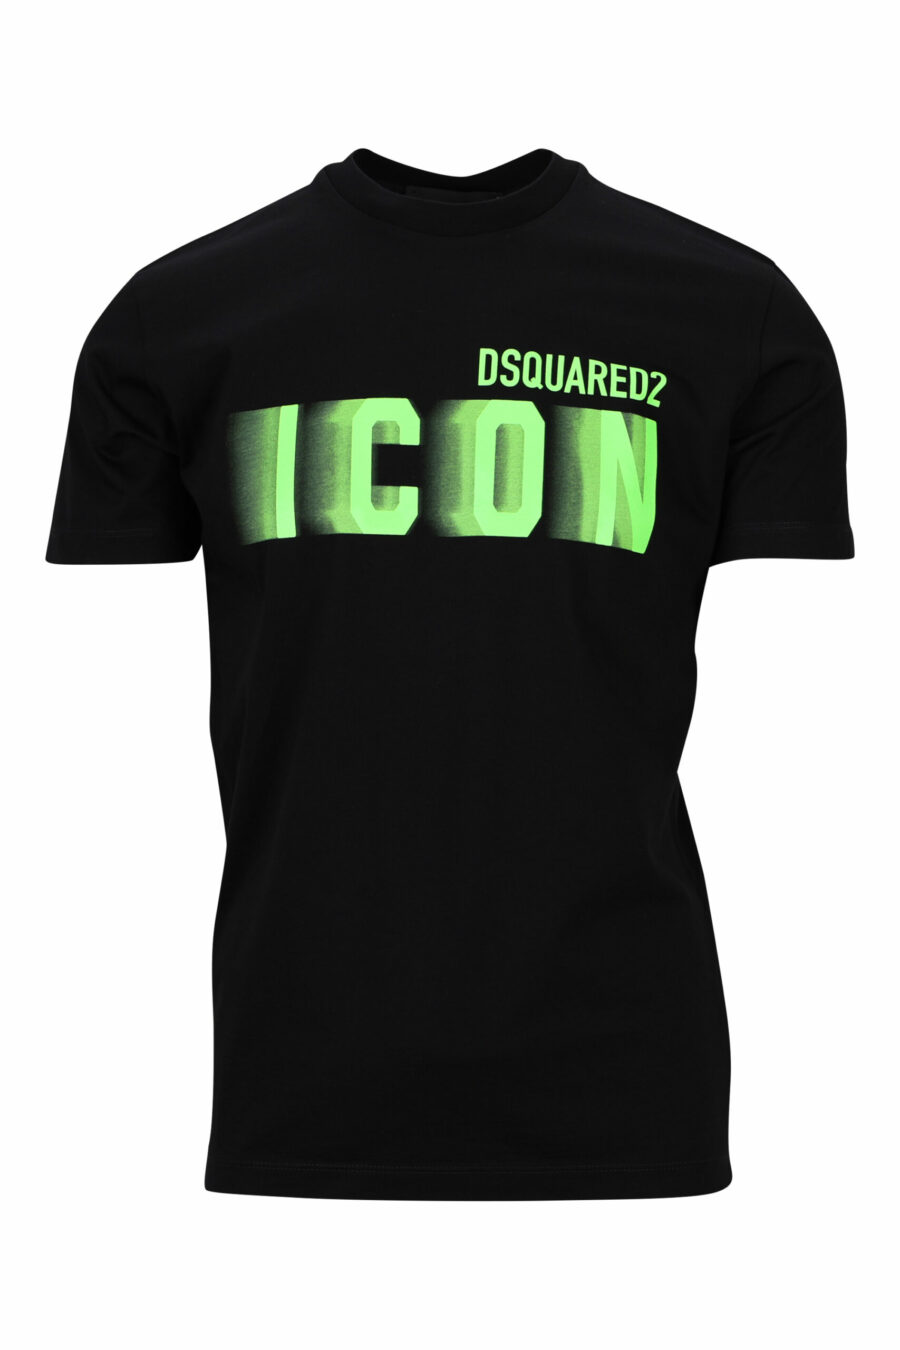 Schwarzes T-Shirt mit neongrünem, verschwommenem "Icon"-Maxilogo - 8054148359126 skaliert